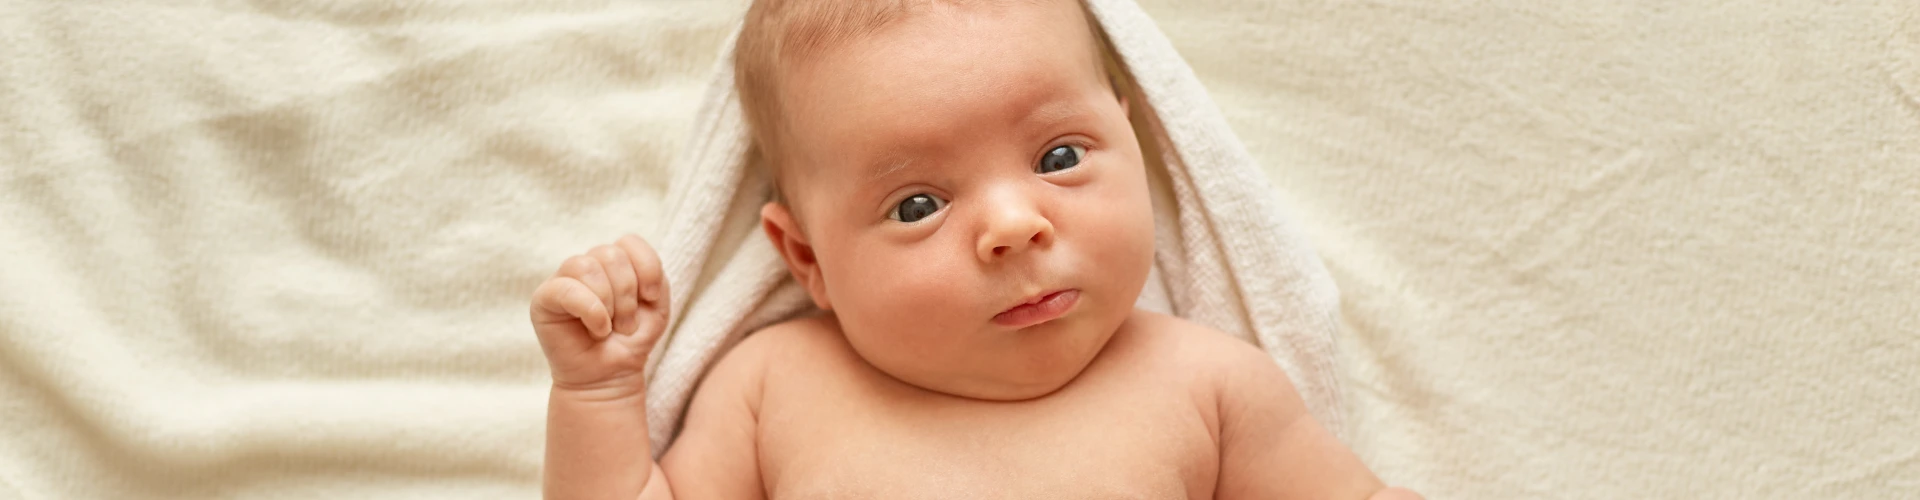 Bebeklerde Pişiğin Önüne Nasıl Geçilir?